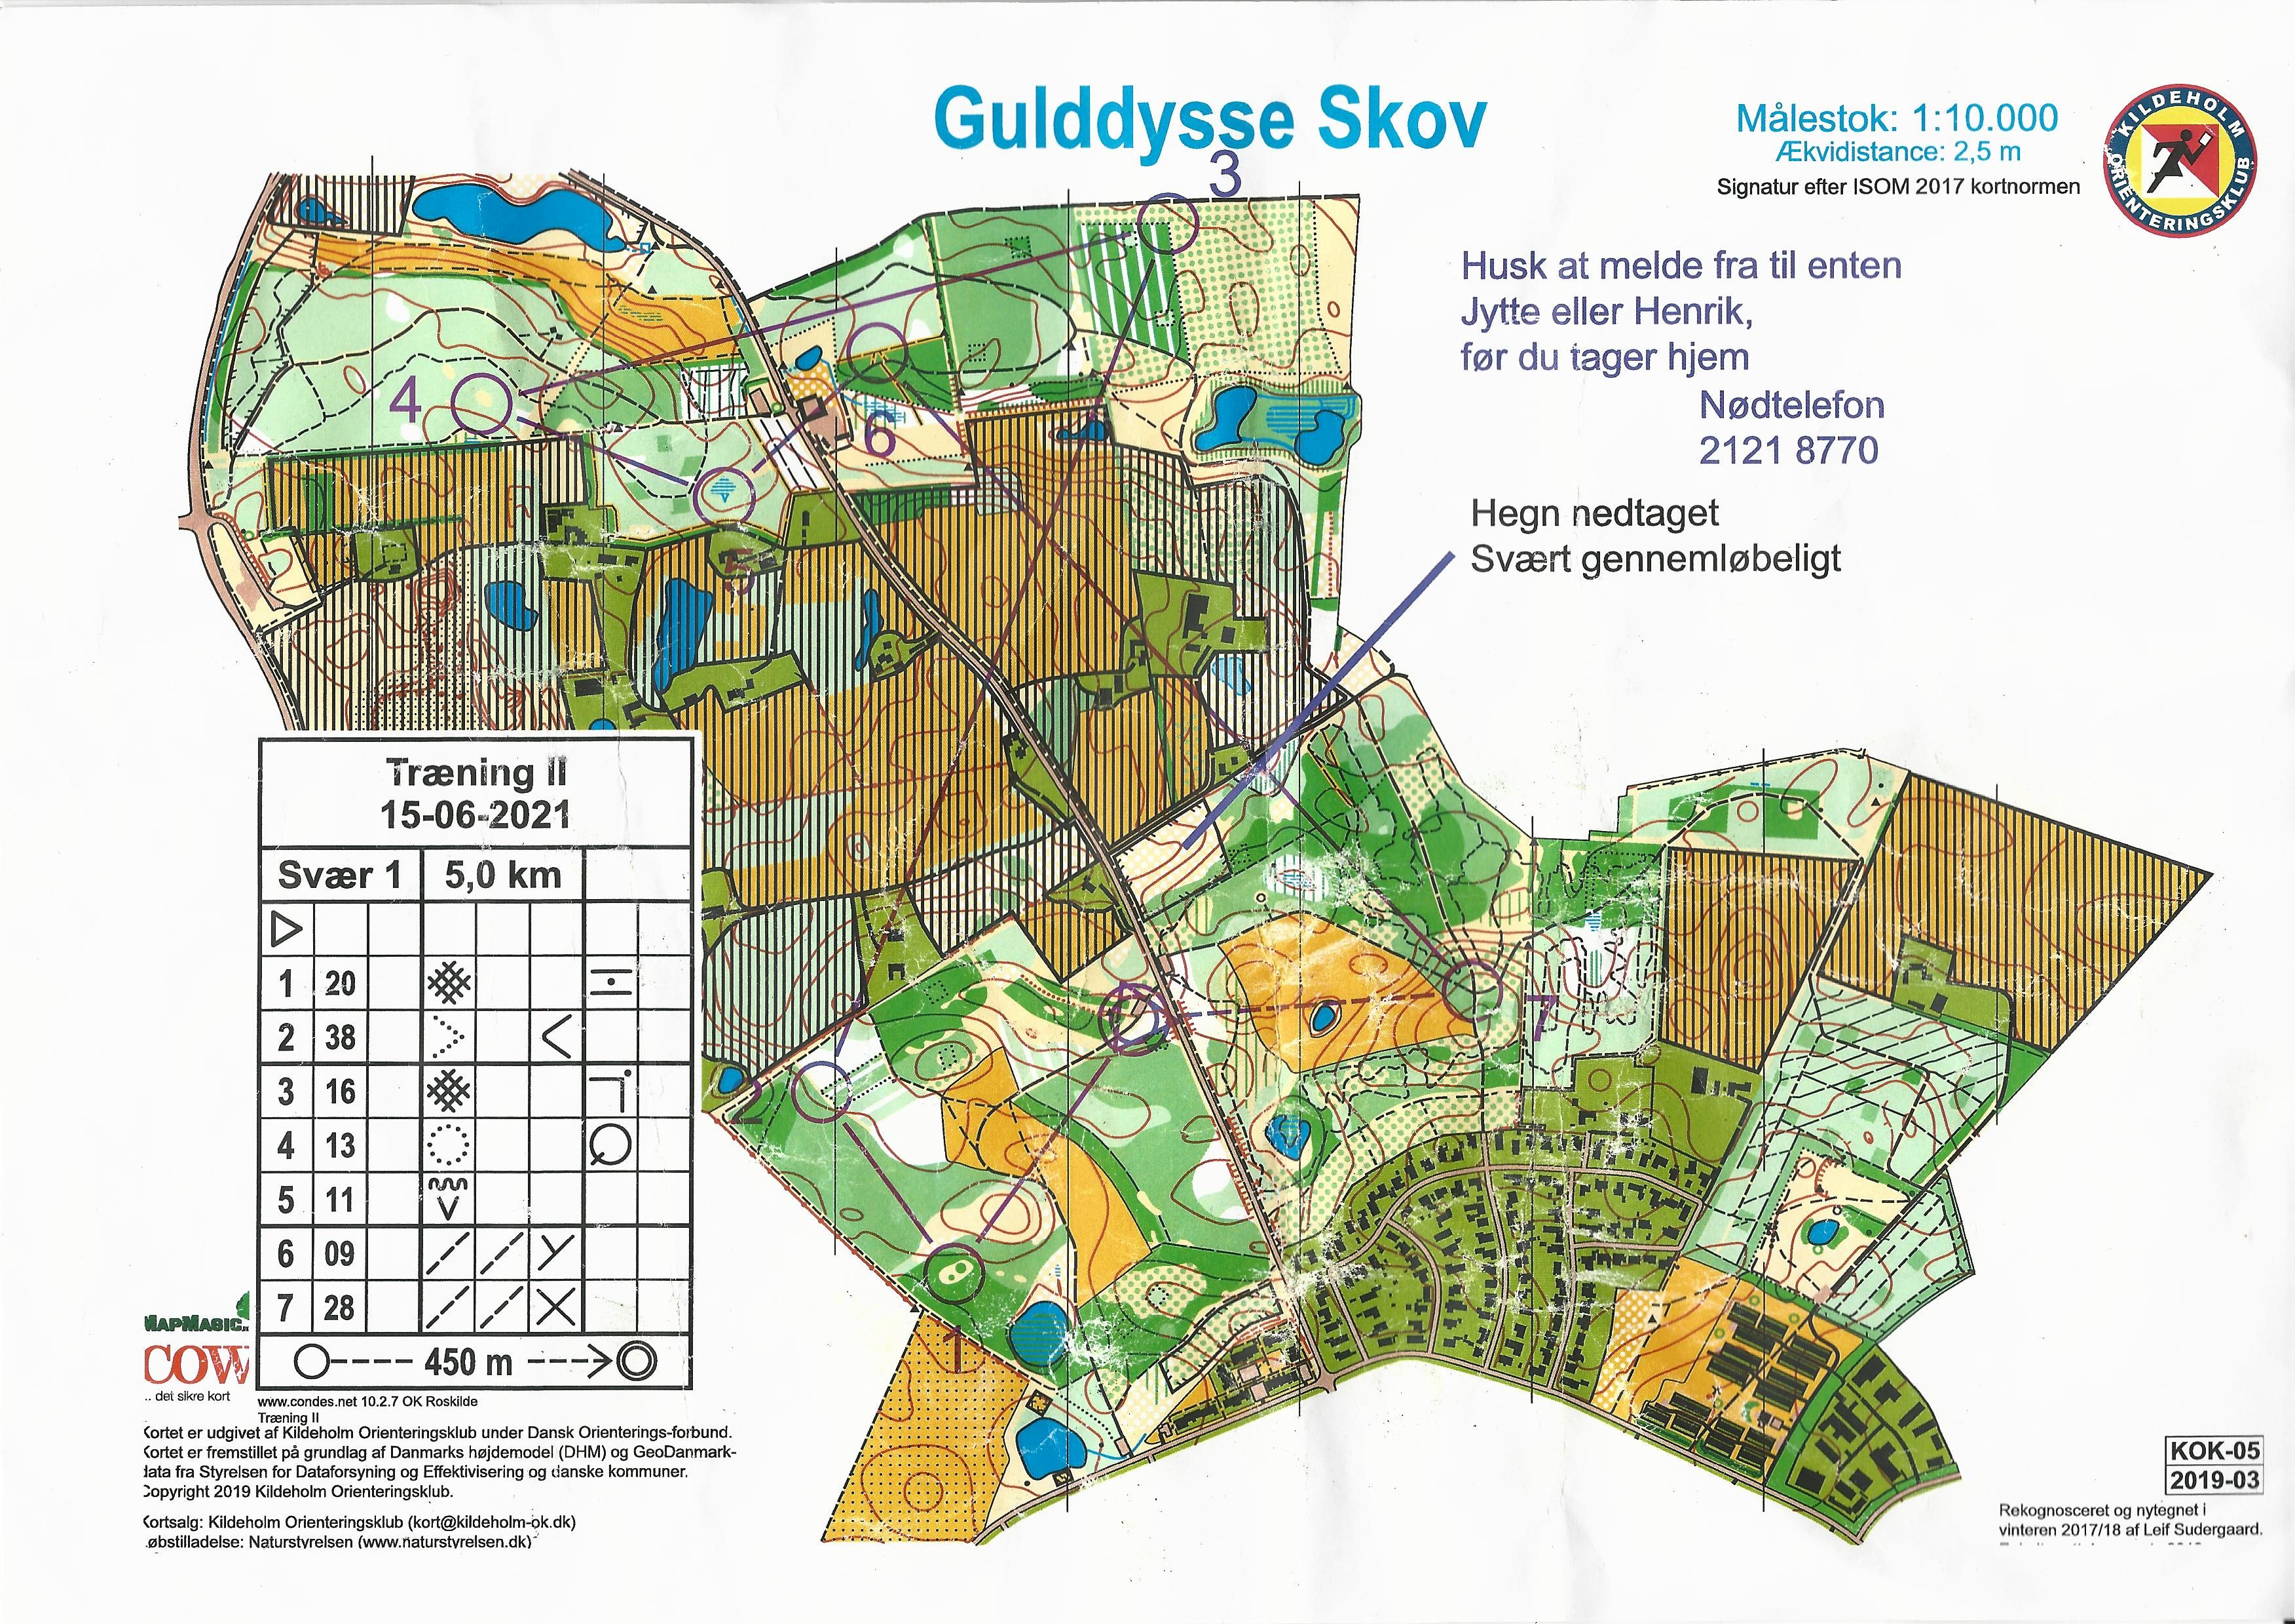 Træning, Gulddysse Skov (2021-06-15)